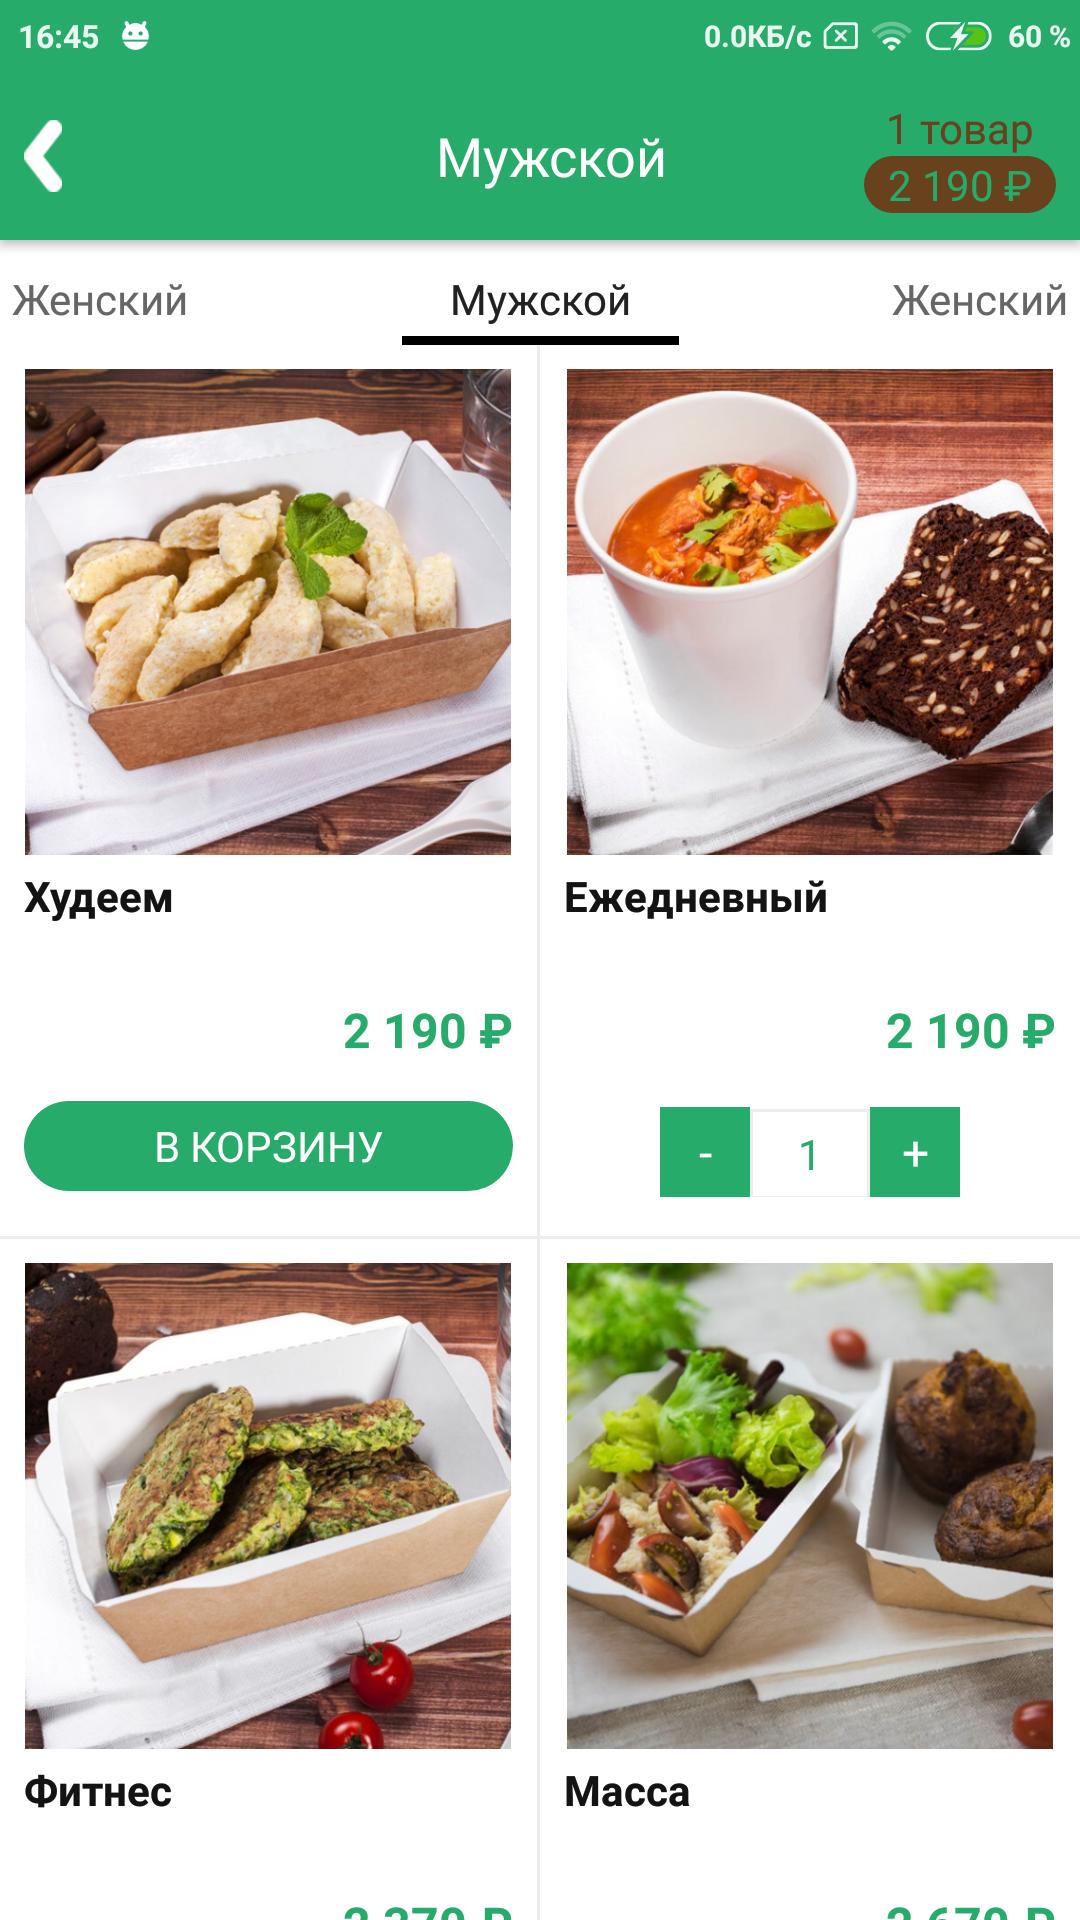 Meal СПБ. Блюда Санкт-Петербурга. Этажи СПБ еда. Еда в Санкт-Петербурге для сообщения. Сайт питание спб